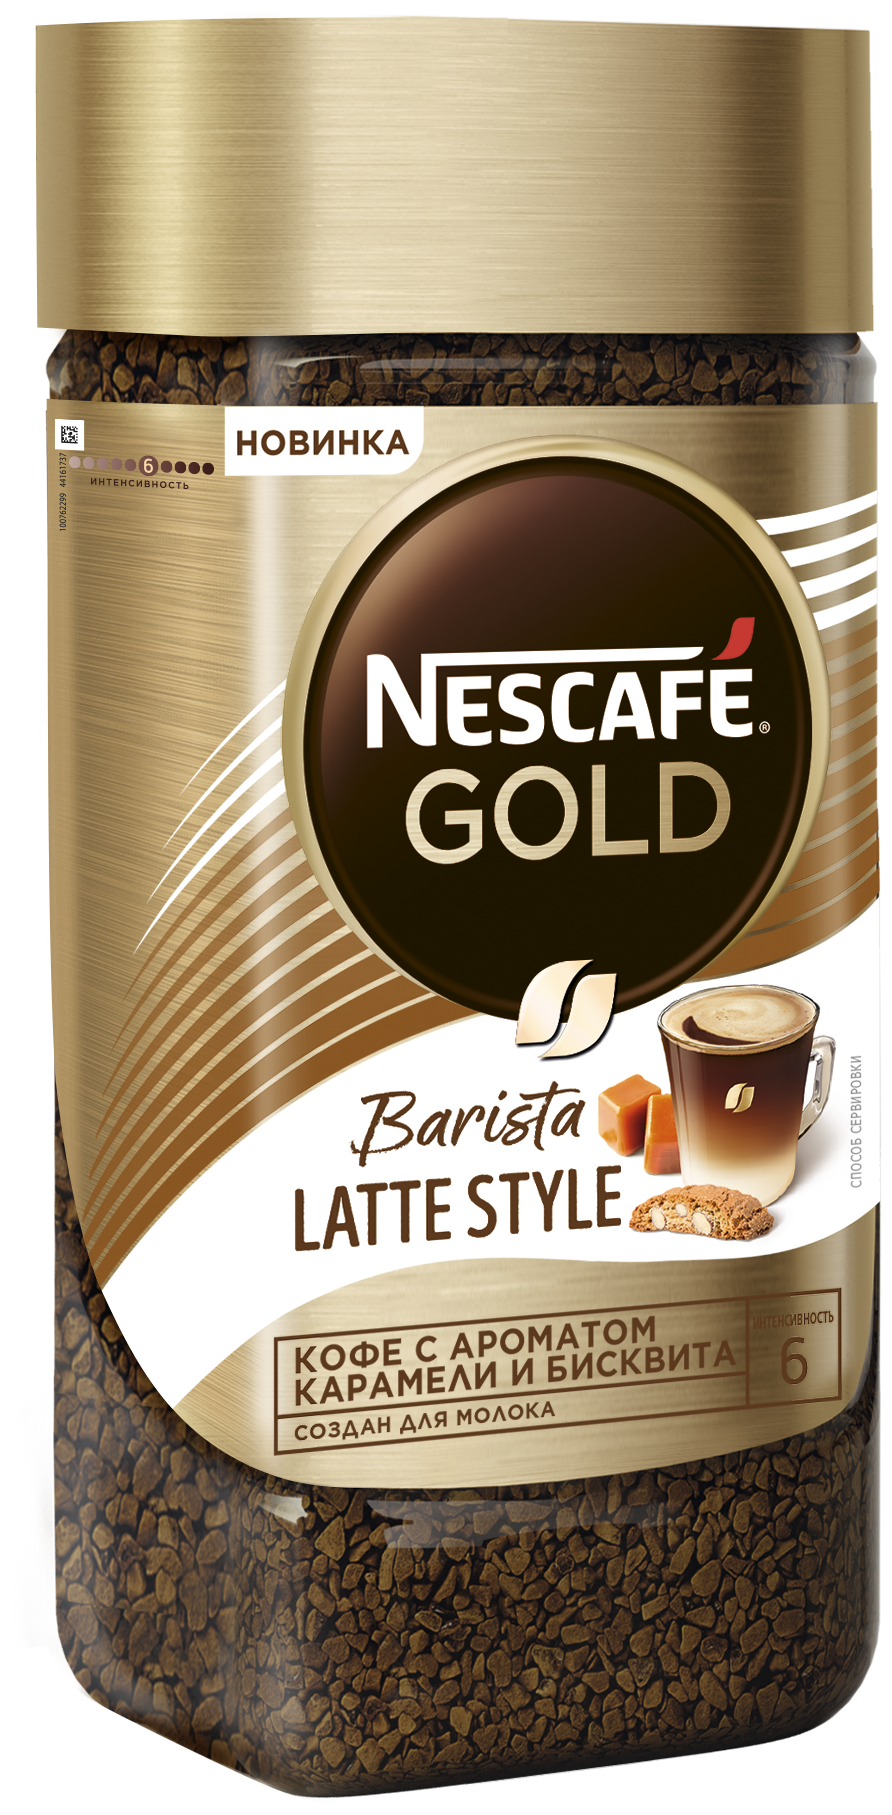 Кофе растворимый Nescafe Gold Barista Latte Style, сублимированный ароматизированный, с добавлением жареного молотого, 85гр Nesquik - фото №3